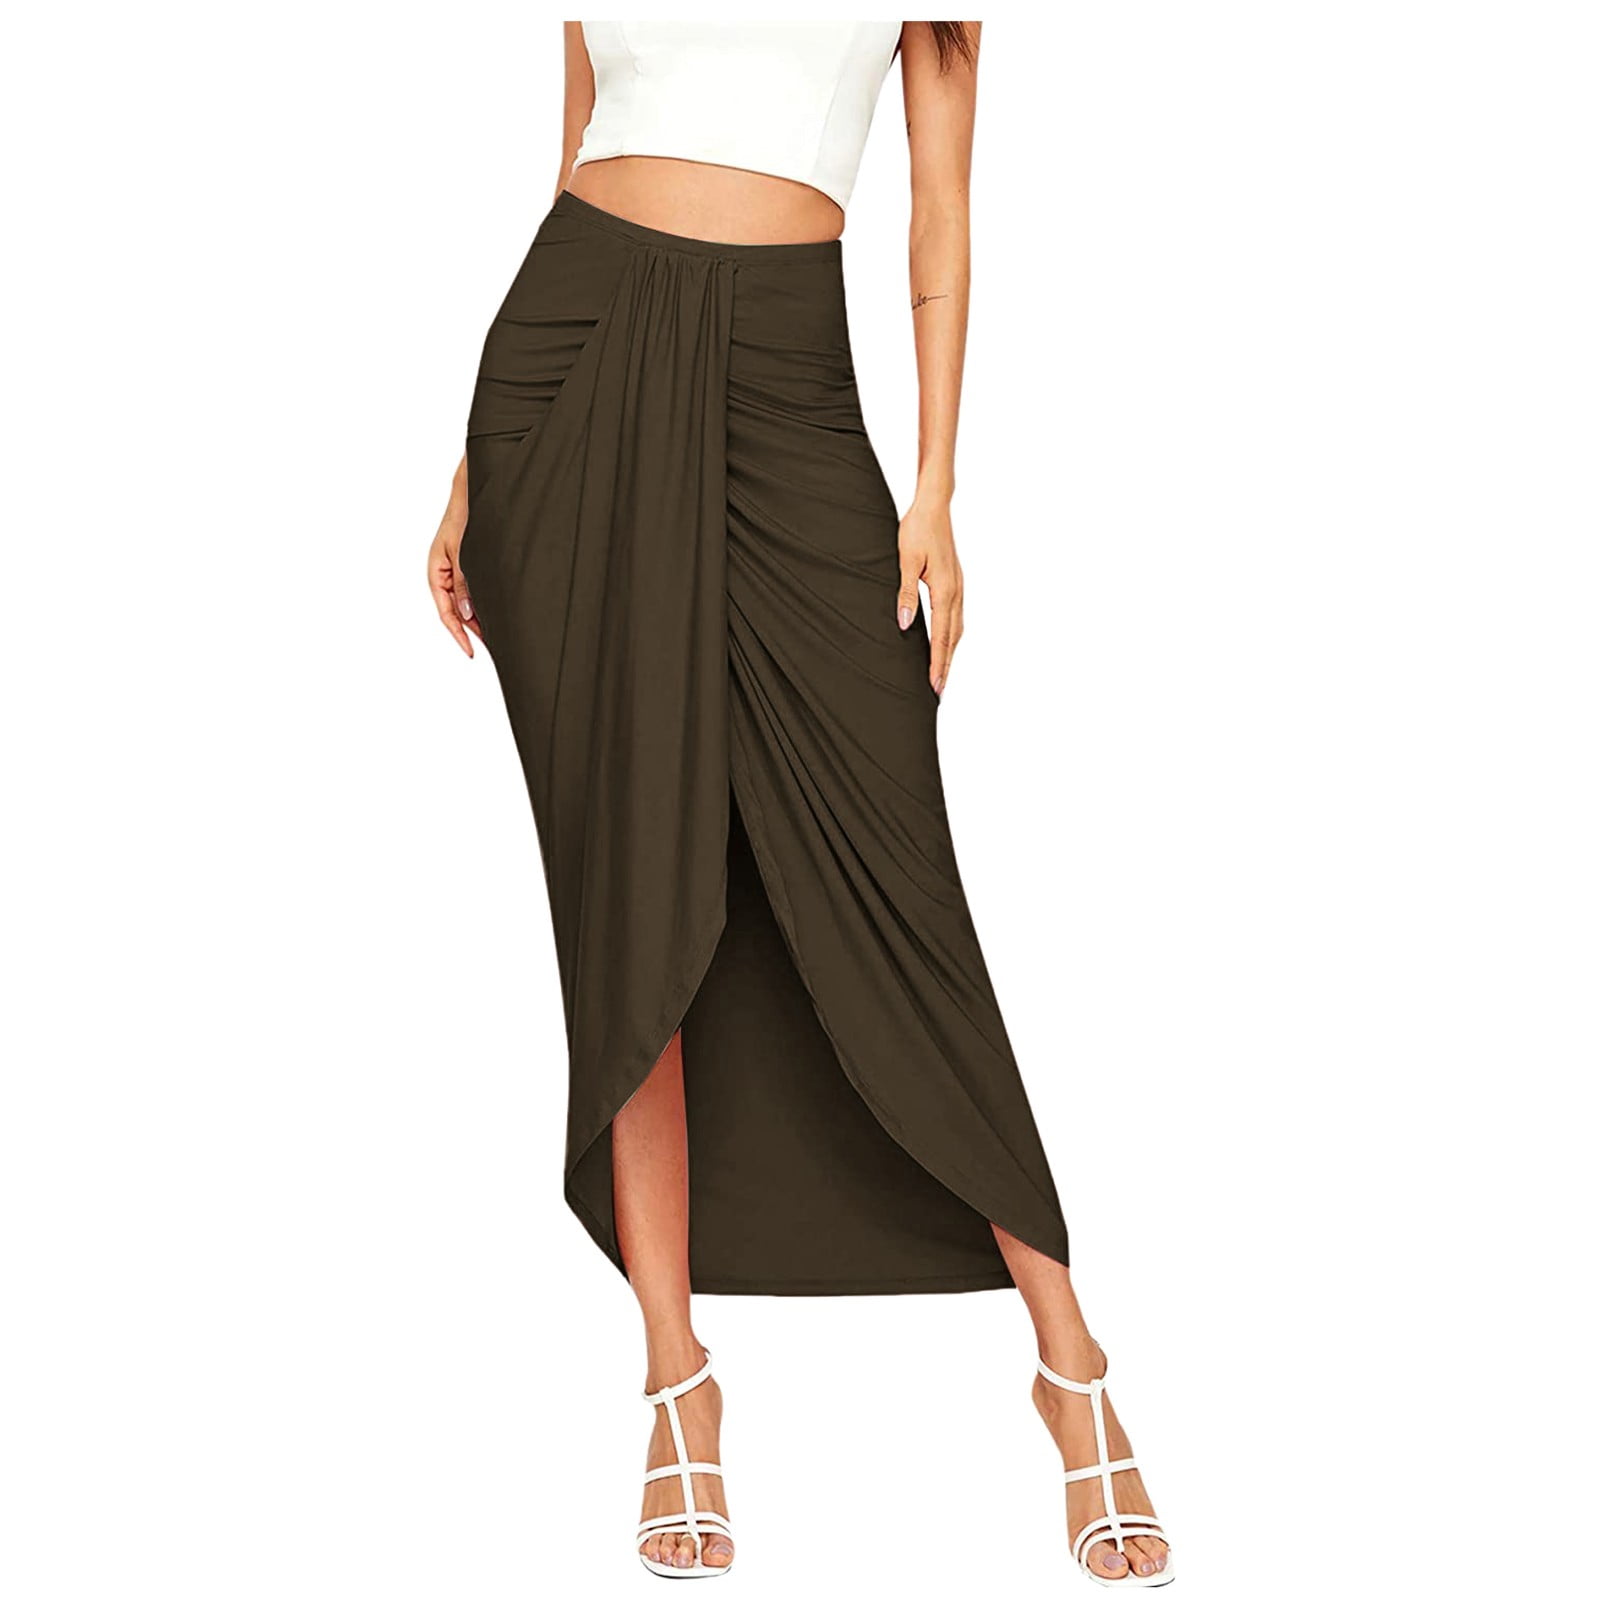 HSMQHJWE Femboy Skirt Spray Skirt Wrap Women'S Draped Skirt High Waist Slit  Maxi Solid Elastic Asymmetrical Casual Skirt High Waist Plaid Skirts For 